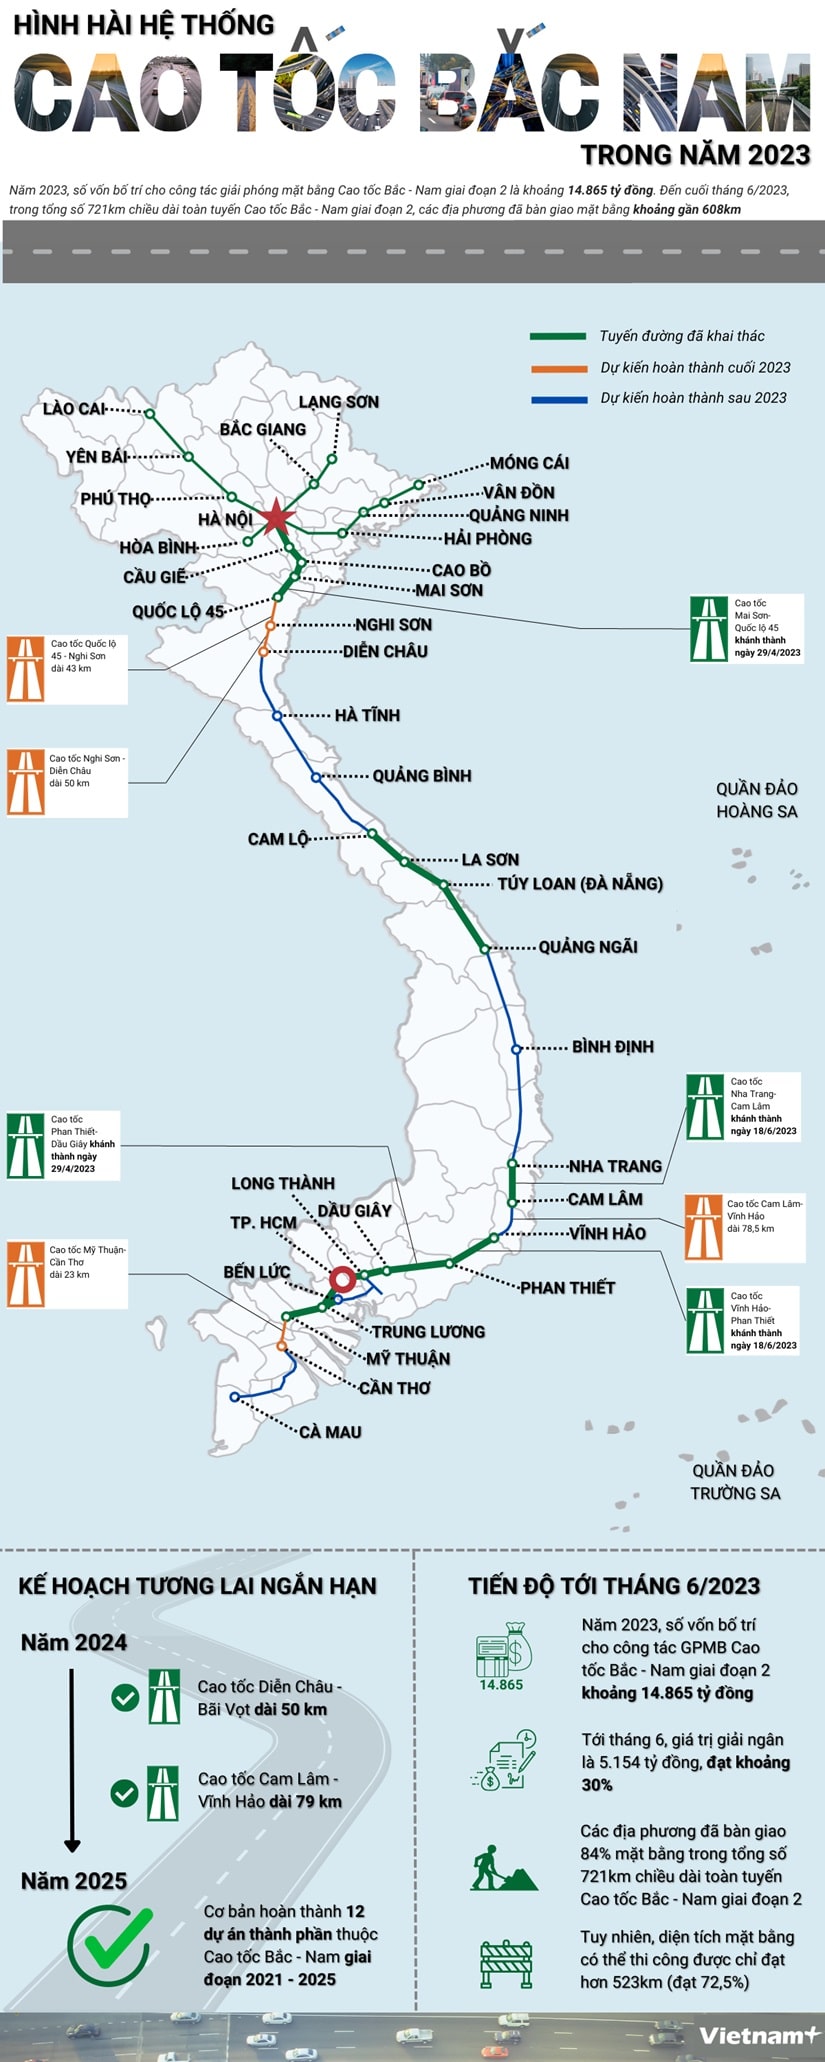 Hinh hai he thong Cao toc Bac Nam min - [Infographics] Hình hài hệ thống Cao tốc Bắc-Nam trong năm 2023